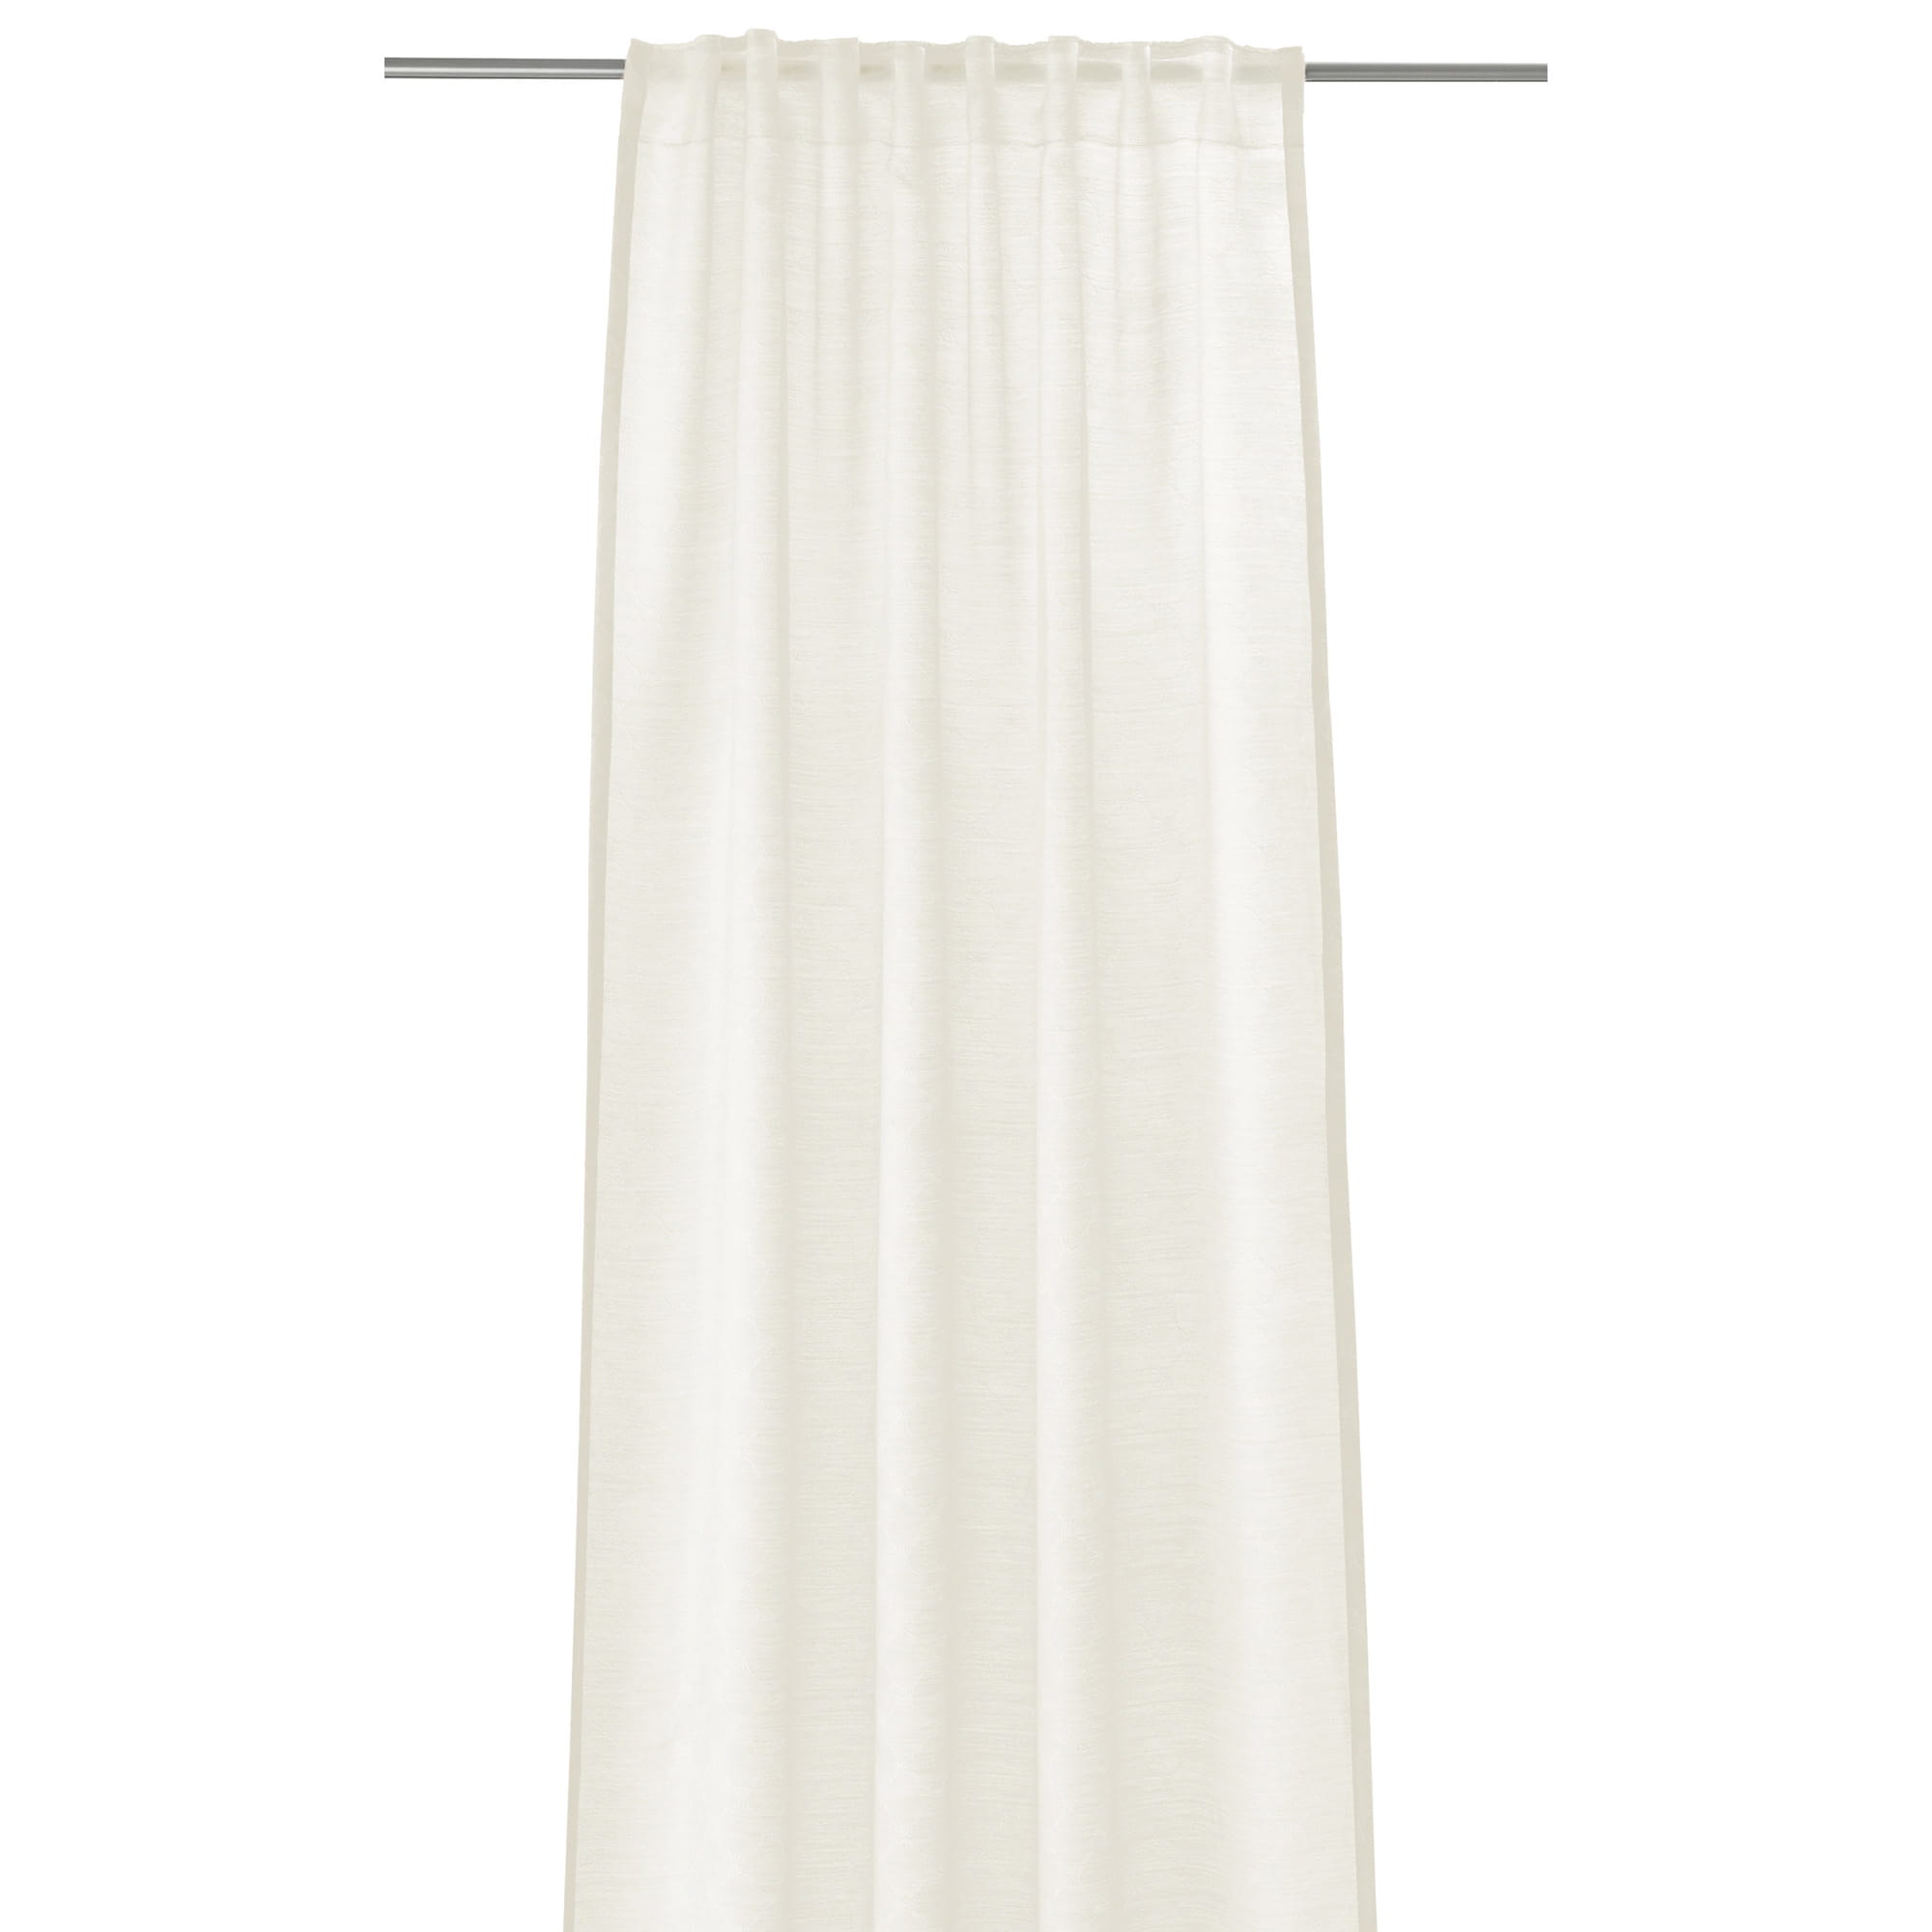 JOOP! Glare - verdecktes - Vorhang Schlaufenband - Weiß 001 Farbe: Gardine